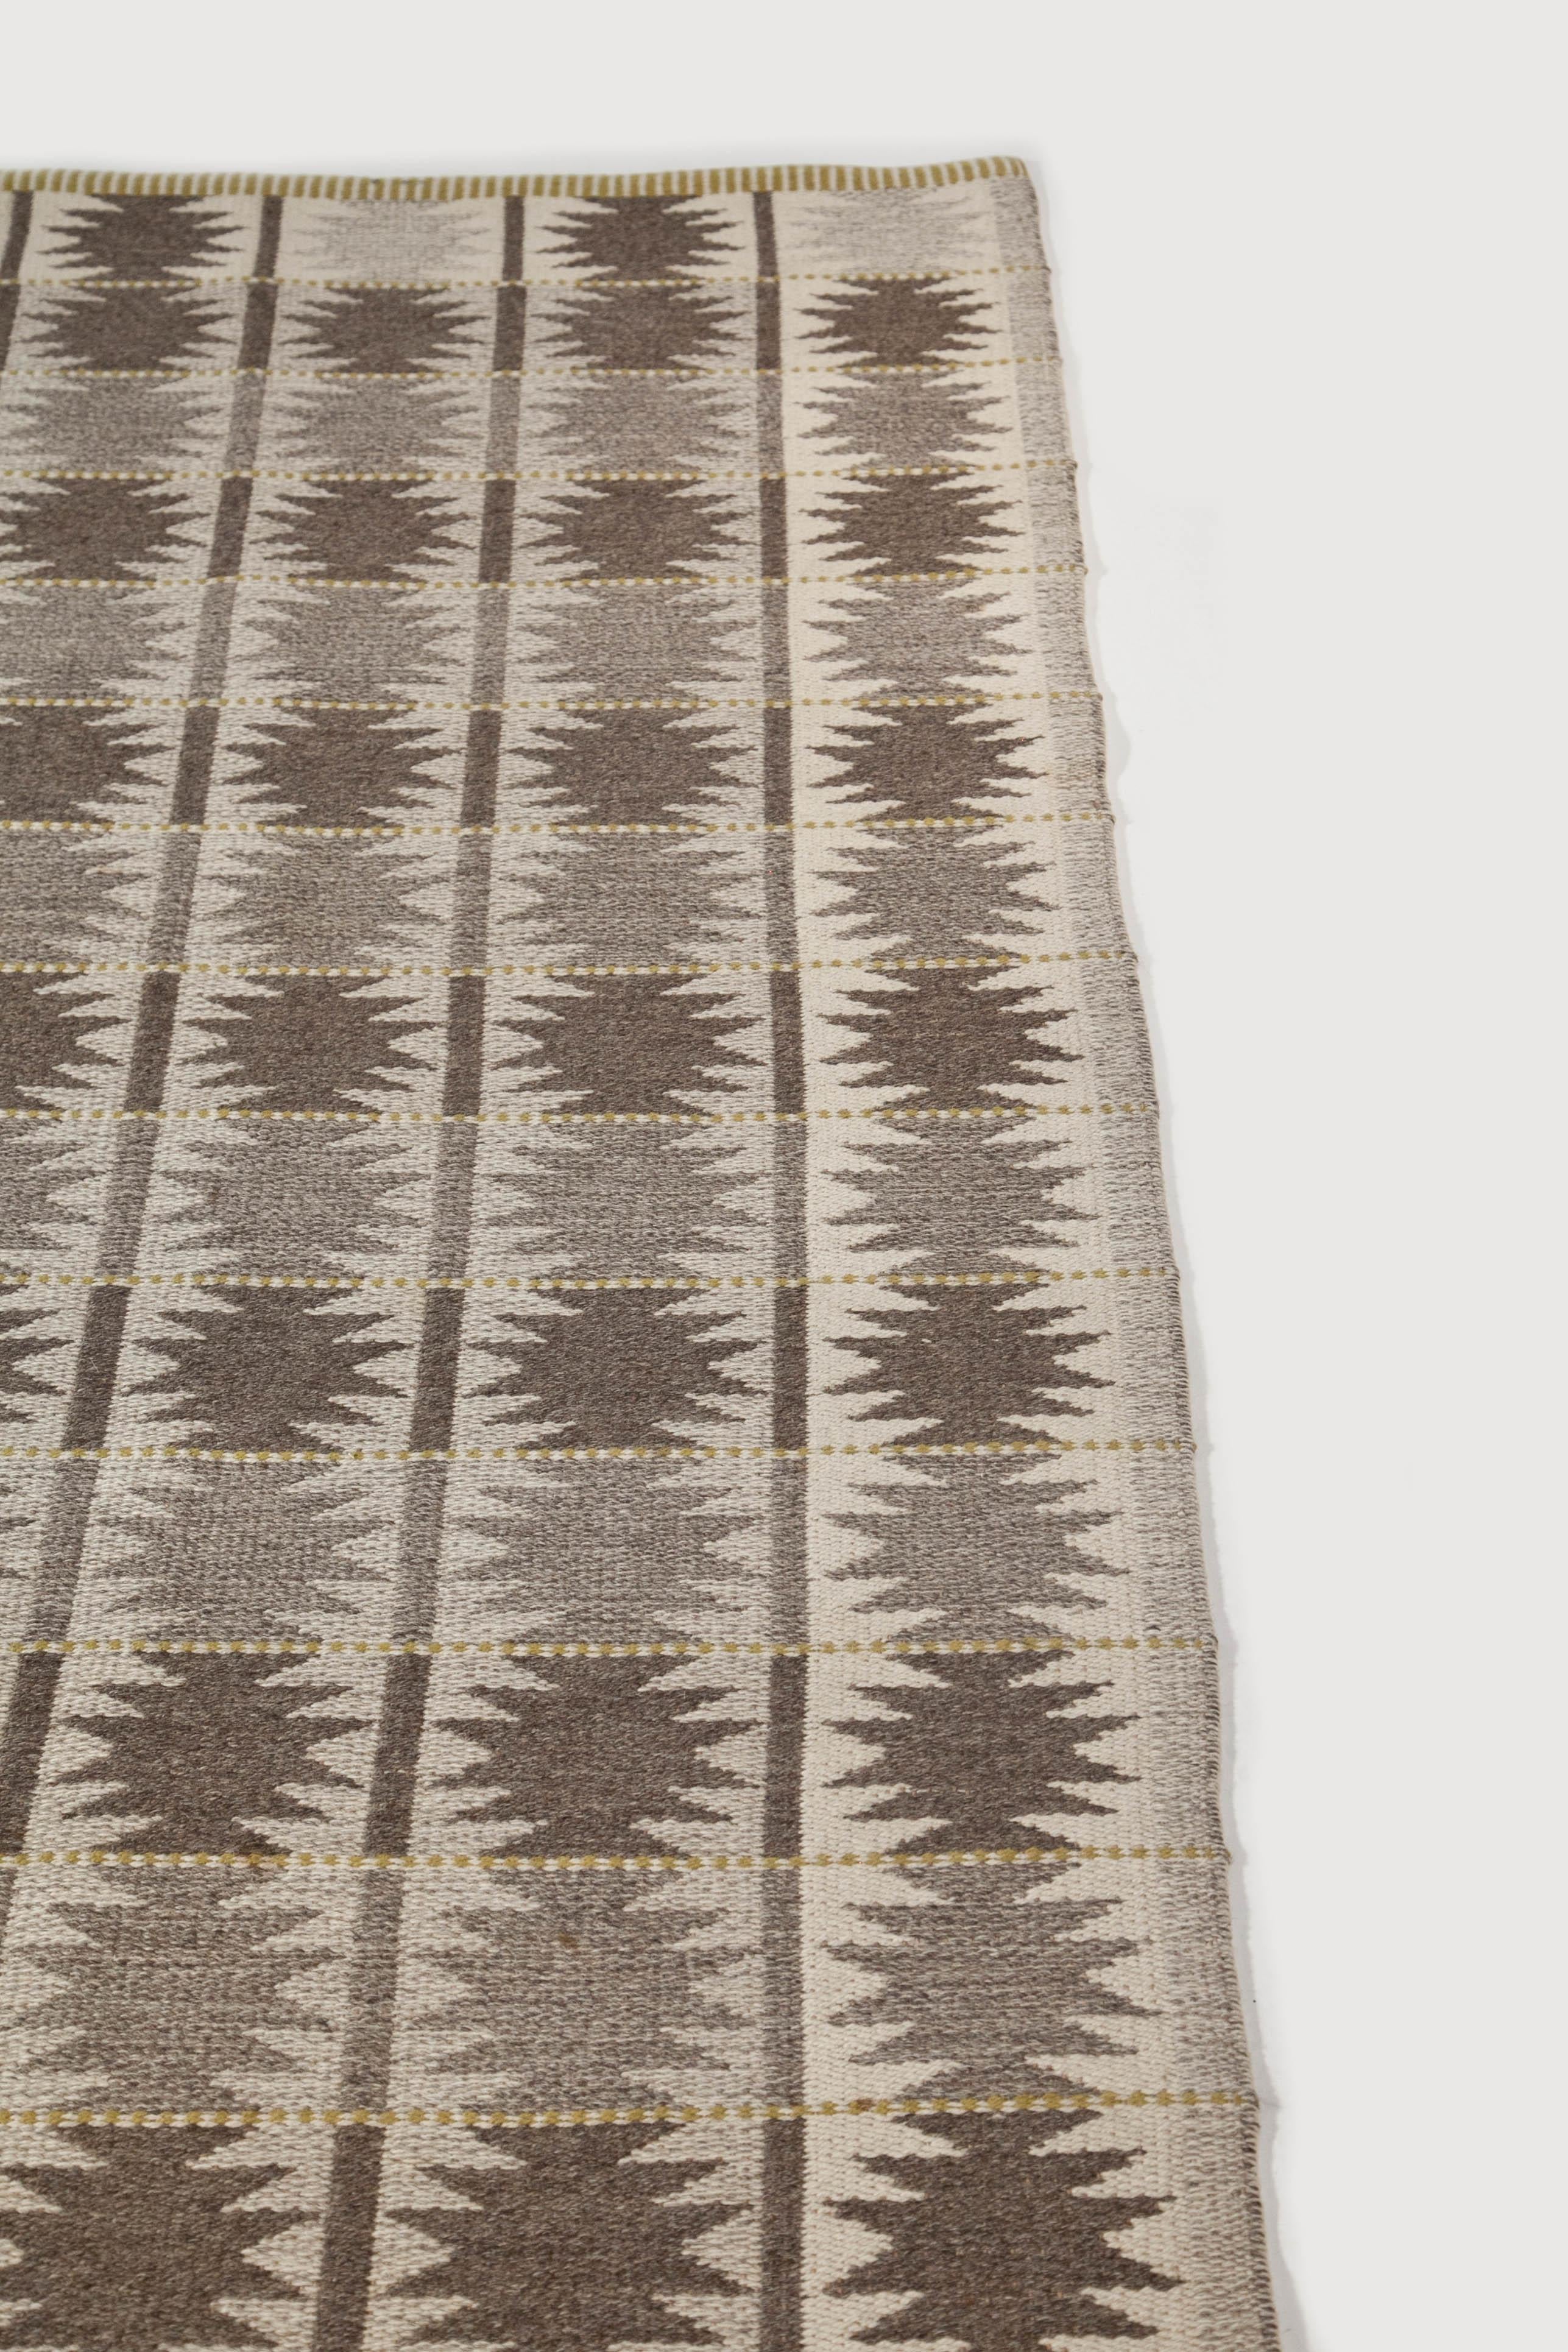 Large Vintage Swedish Flat-Weave Carpet, Sweden, 1960's For Sale 6